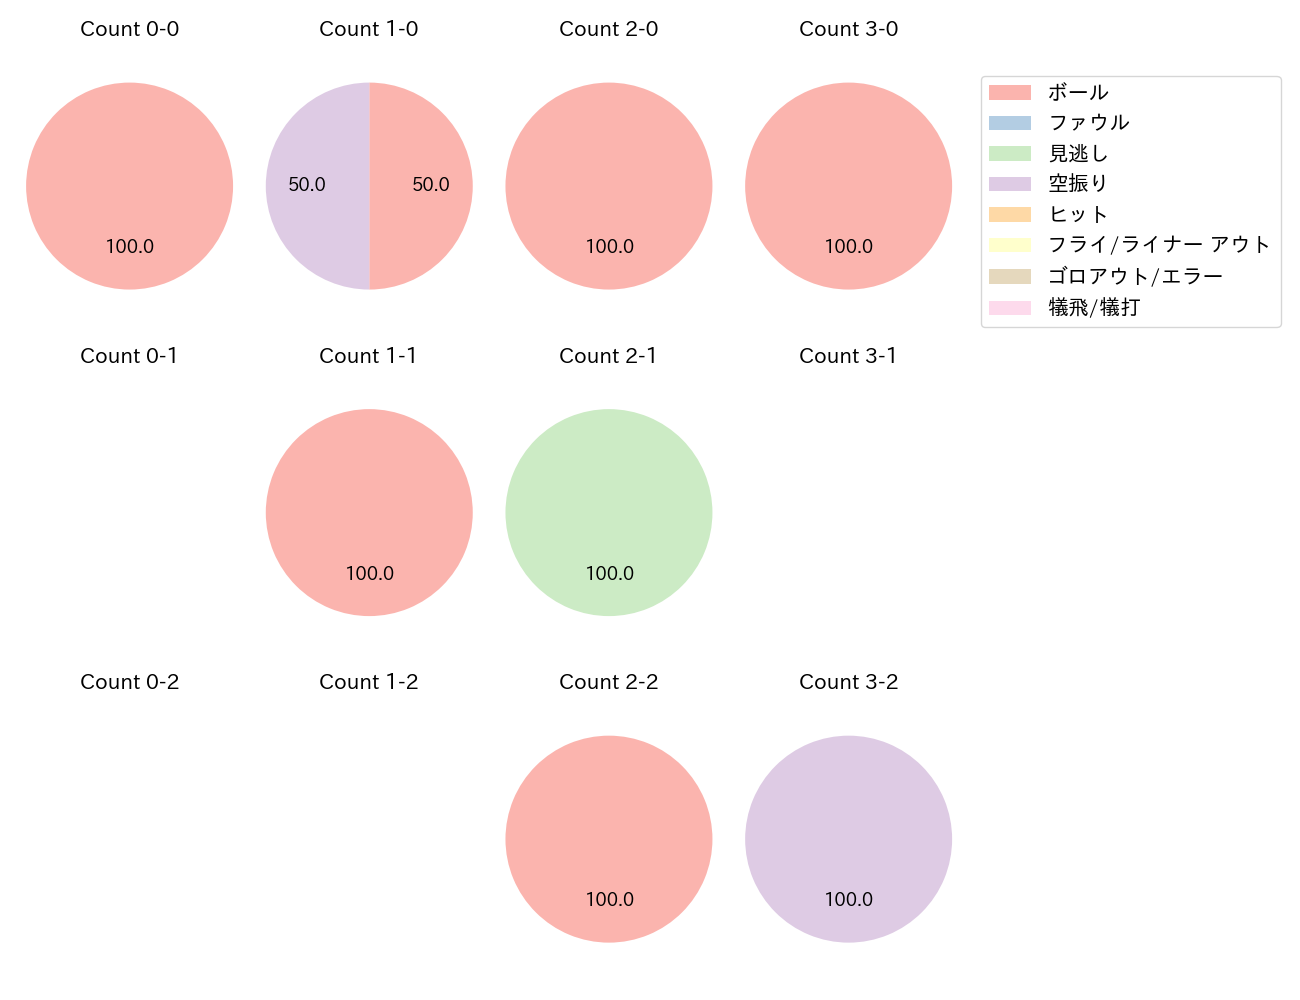 曽根 海成の球数分布(2021年9月)